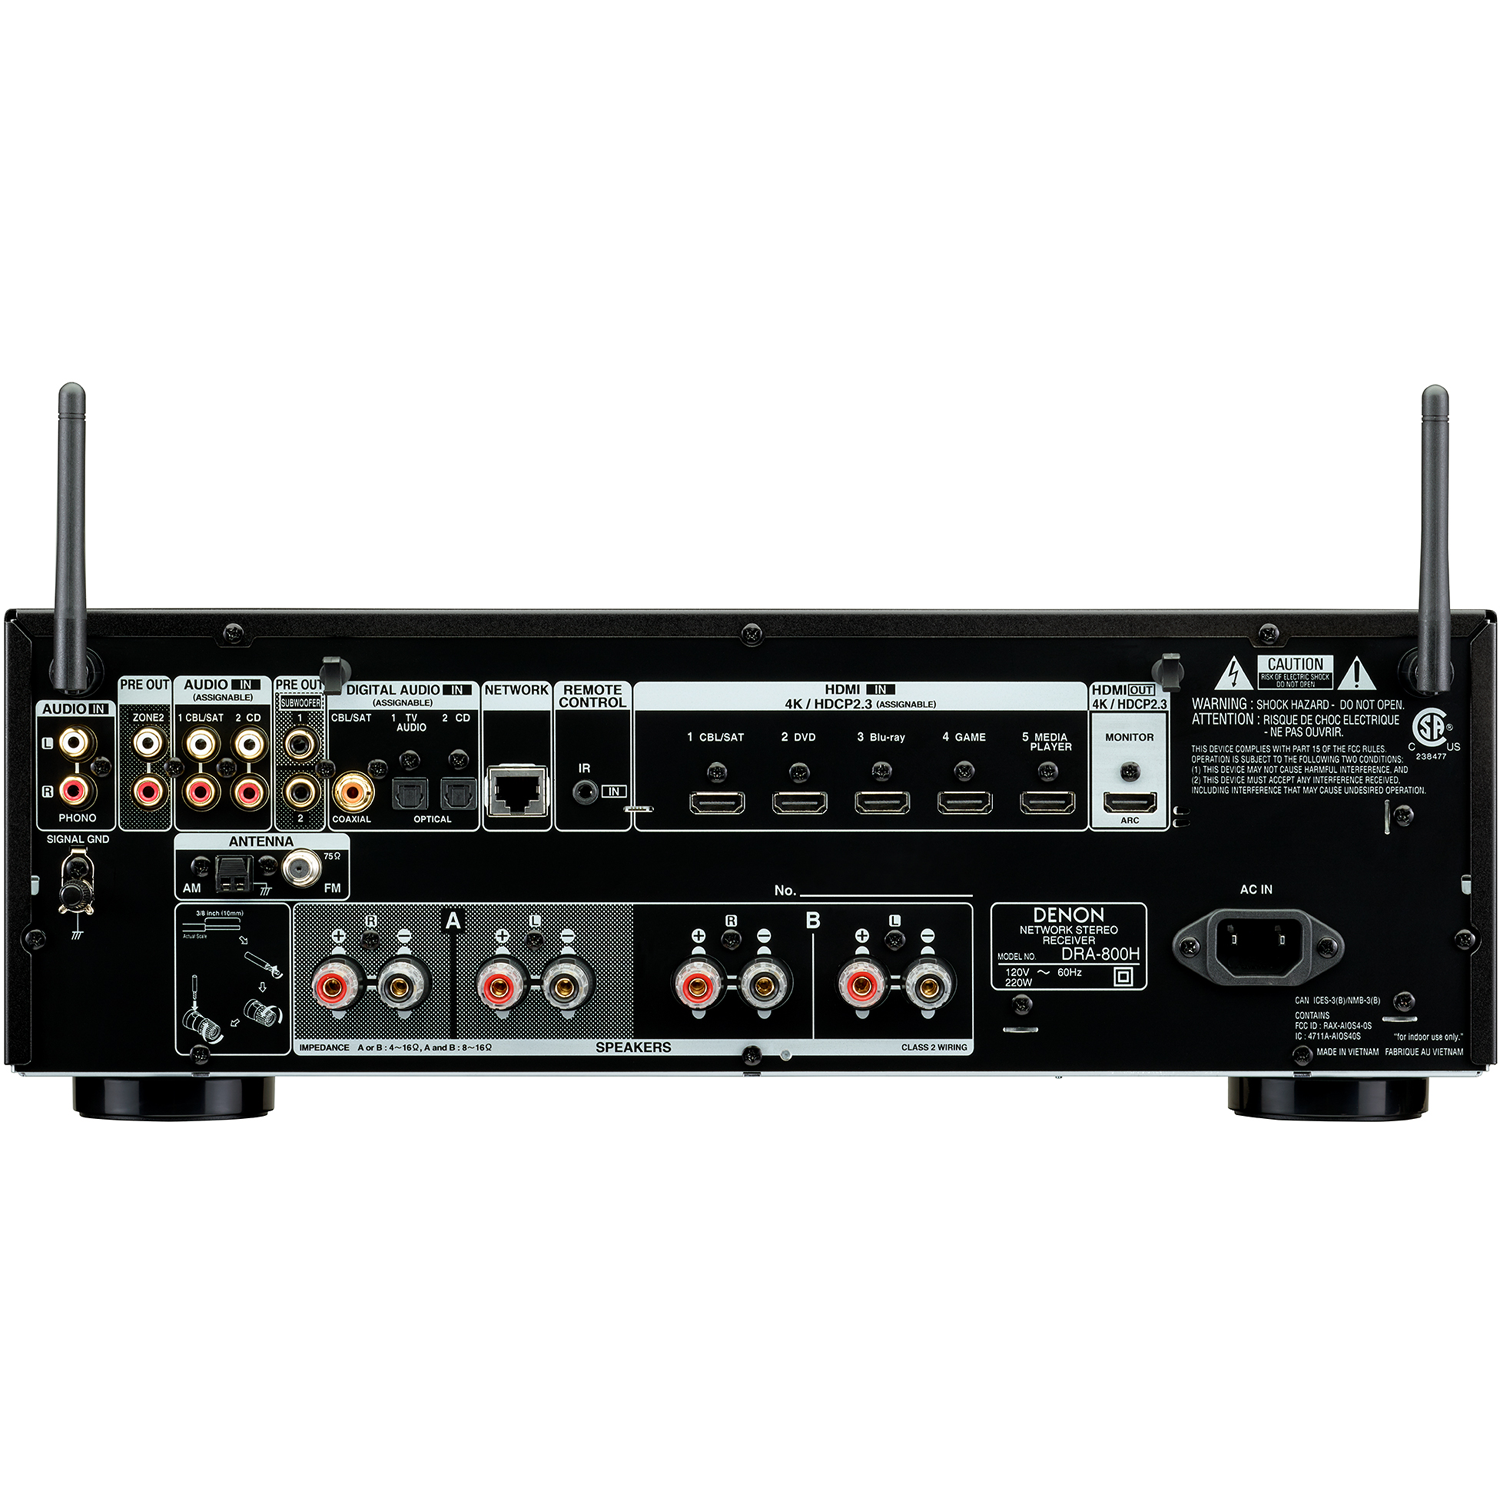 Denon Amplificador DRA-800H de 2 canales, 100 W por canal a 8 ohmios,  Bluetooth, HDMI, tecnología HEOS, compatible con control de voz Alexa